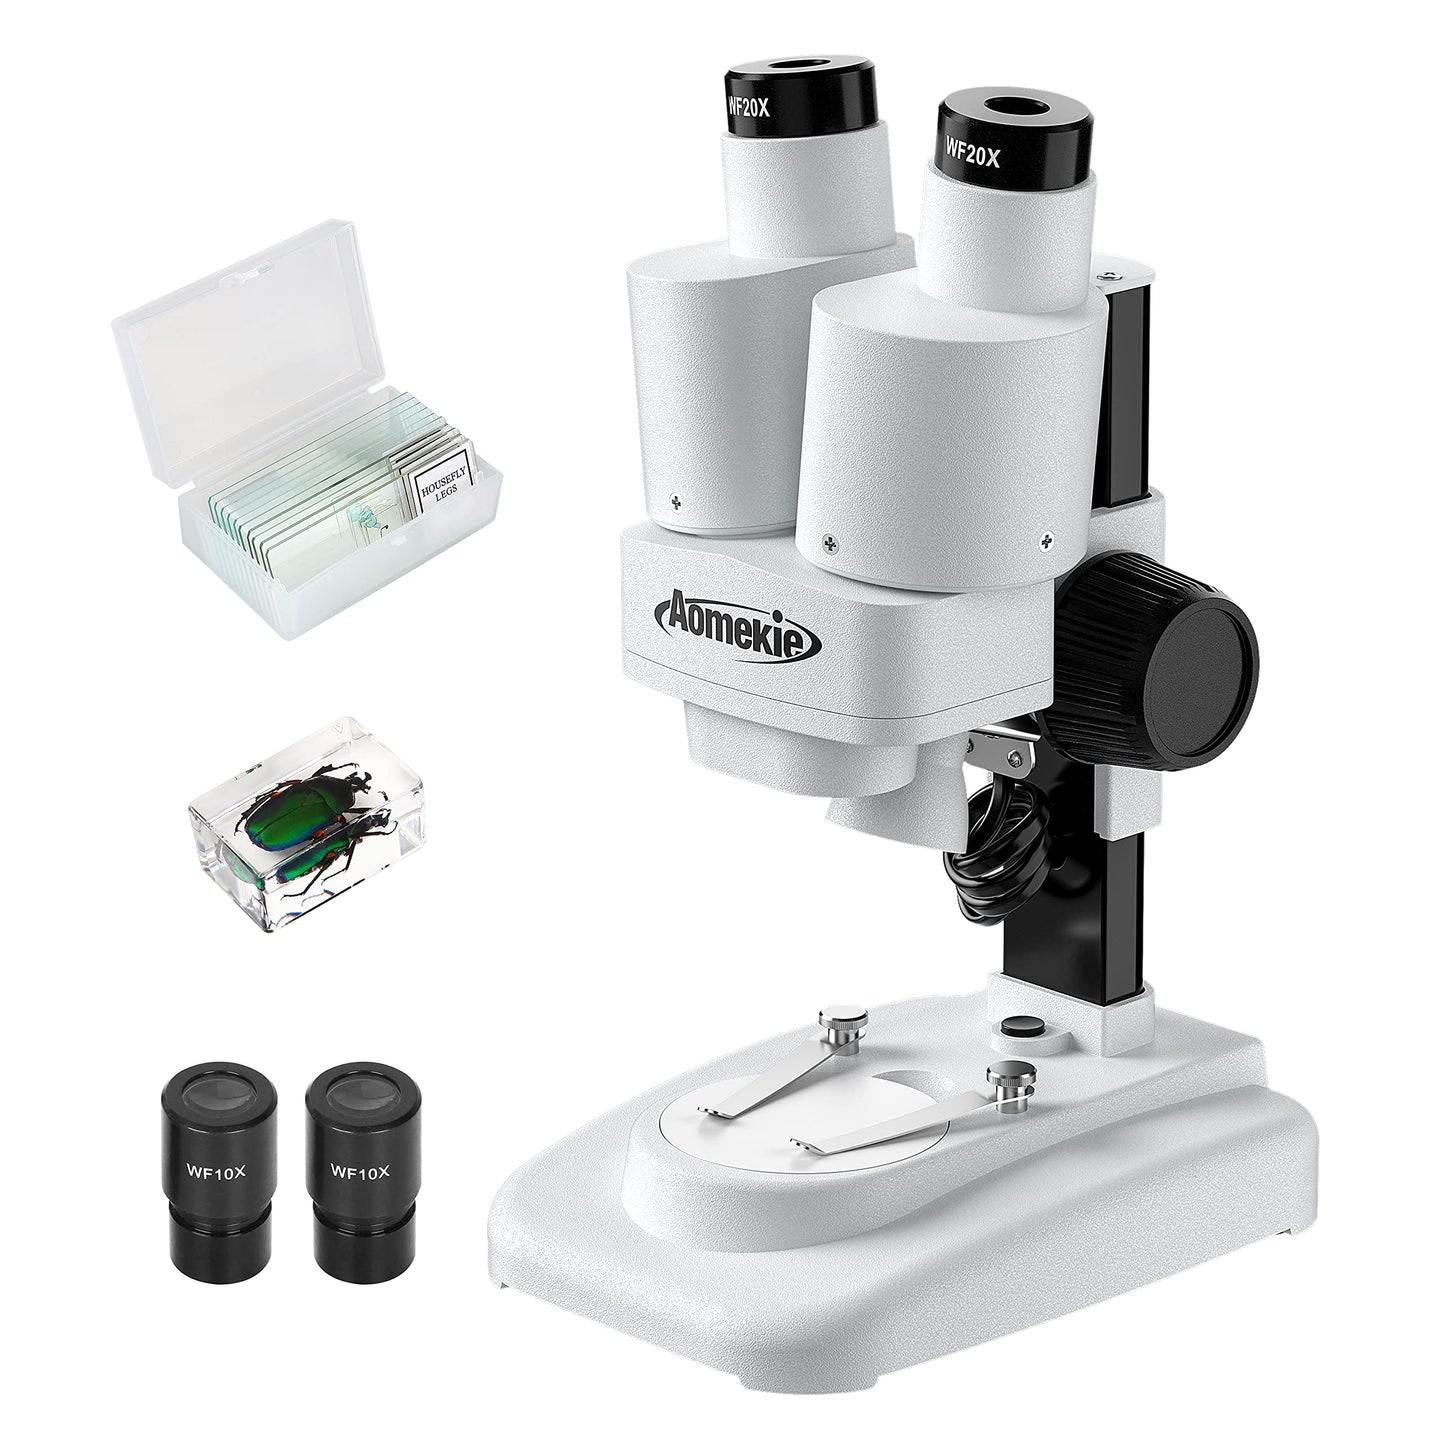 Microscope binoculaire stéréo ajustable 40X